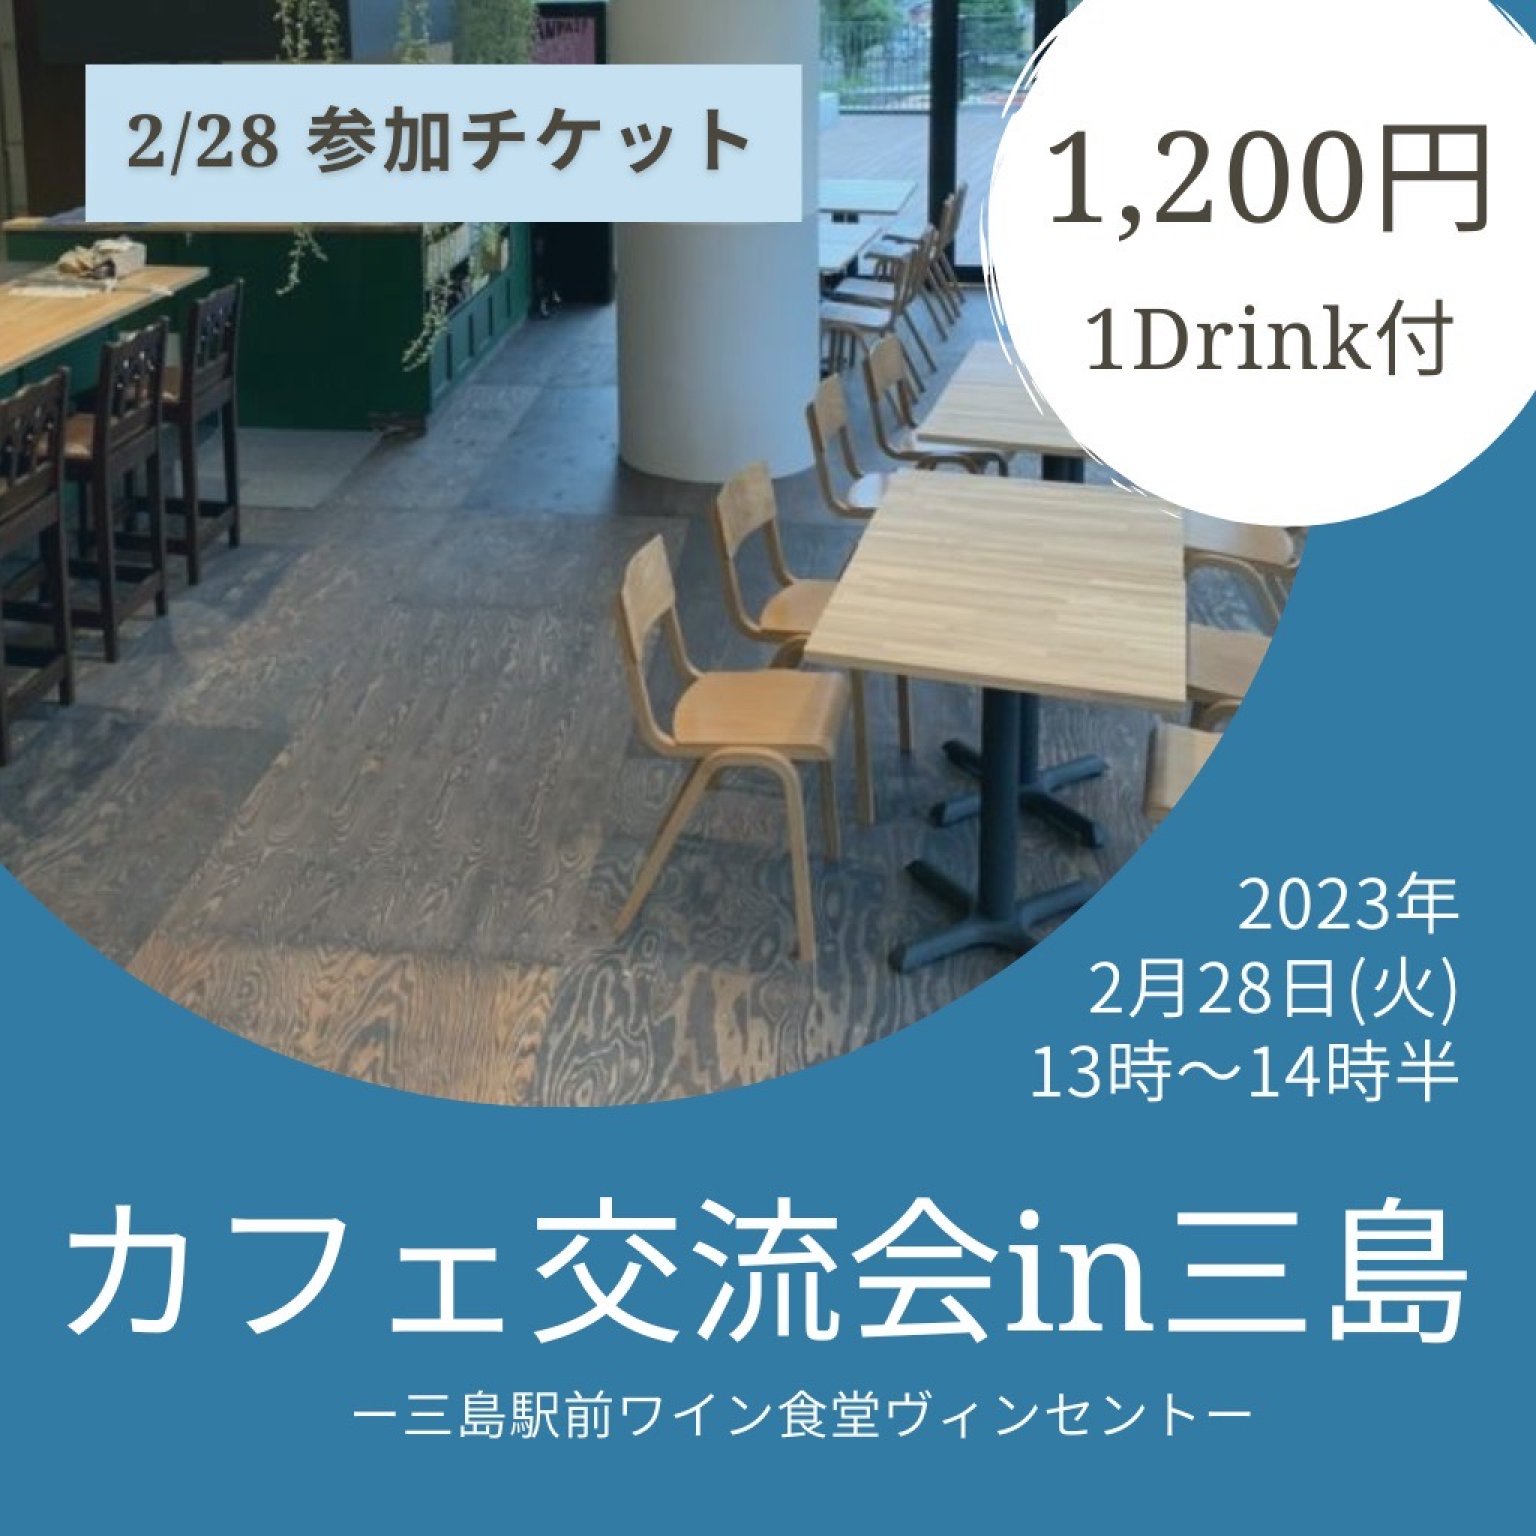 2/28(火)カフェ交流会in三島駅ヴィンセント参加チケット